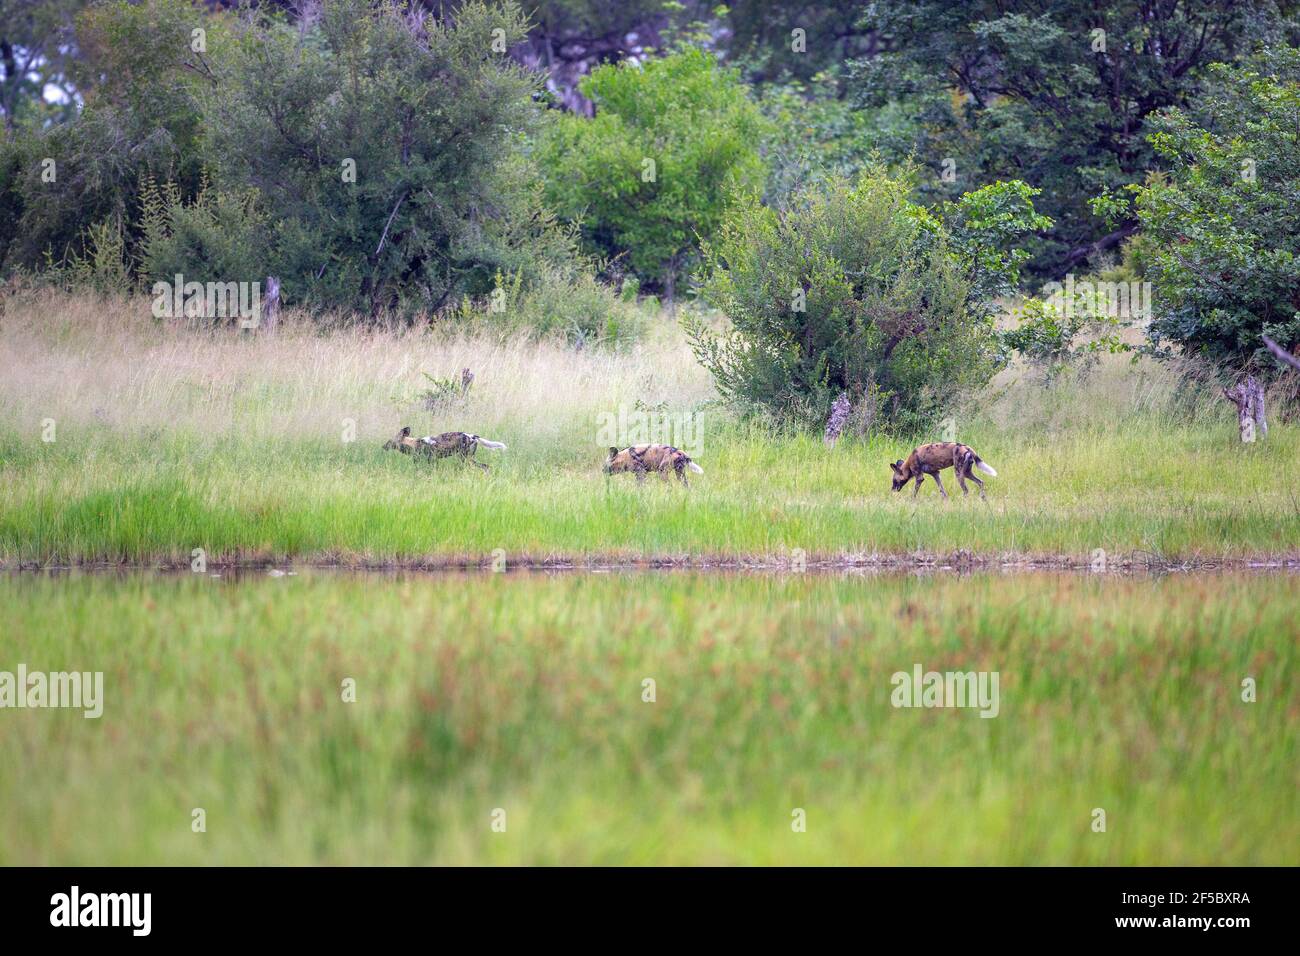 African Wild Hunting Dogs Painted Wolves (Lycaon pictus). Drei von neun Stück unterwegs. Scouting, aufeinander folgend, entlang eines Duftweges. Stockfoto